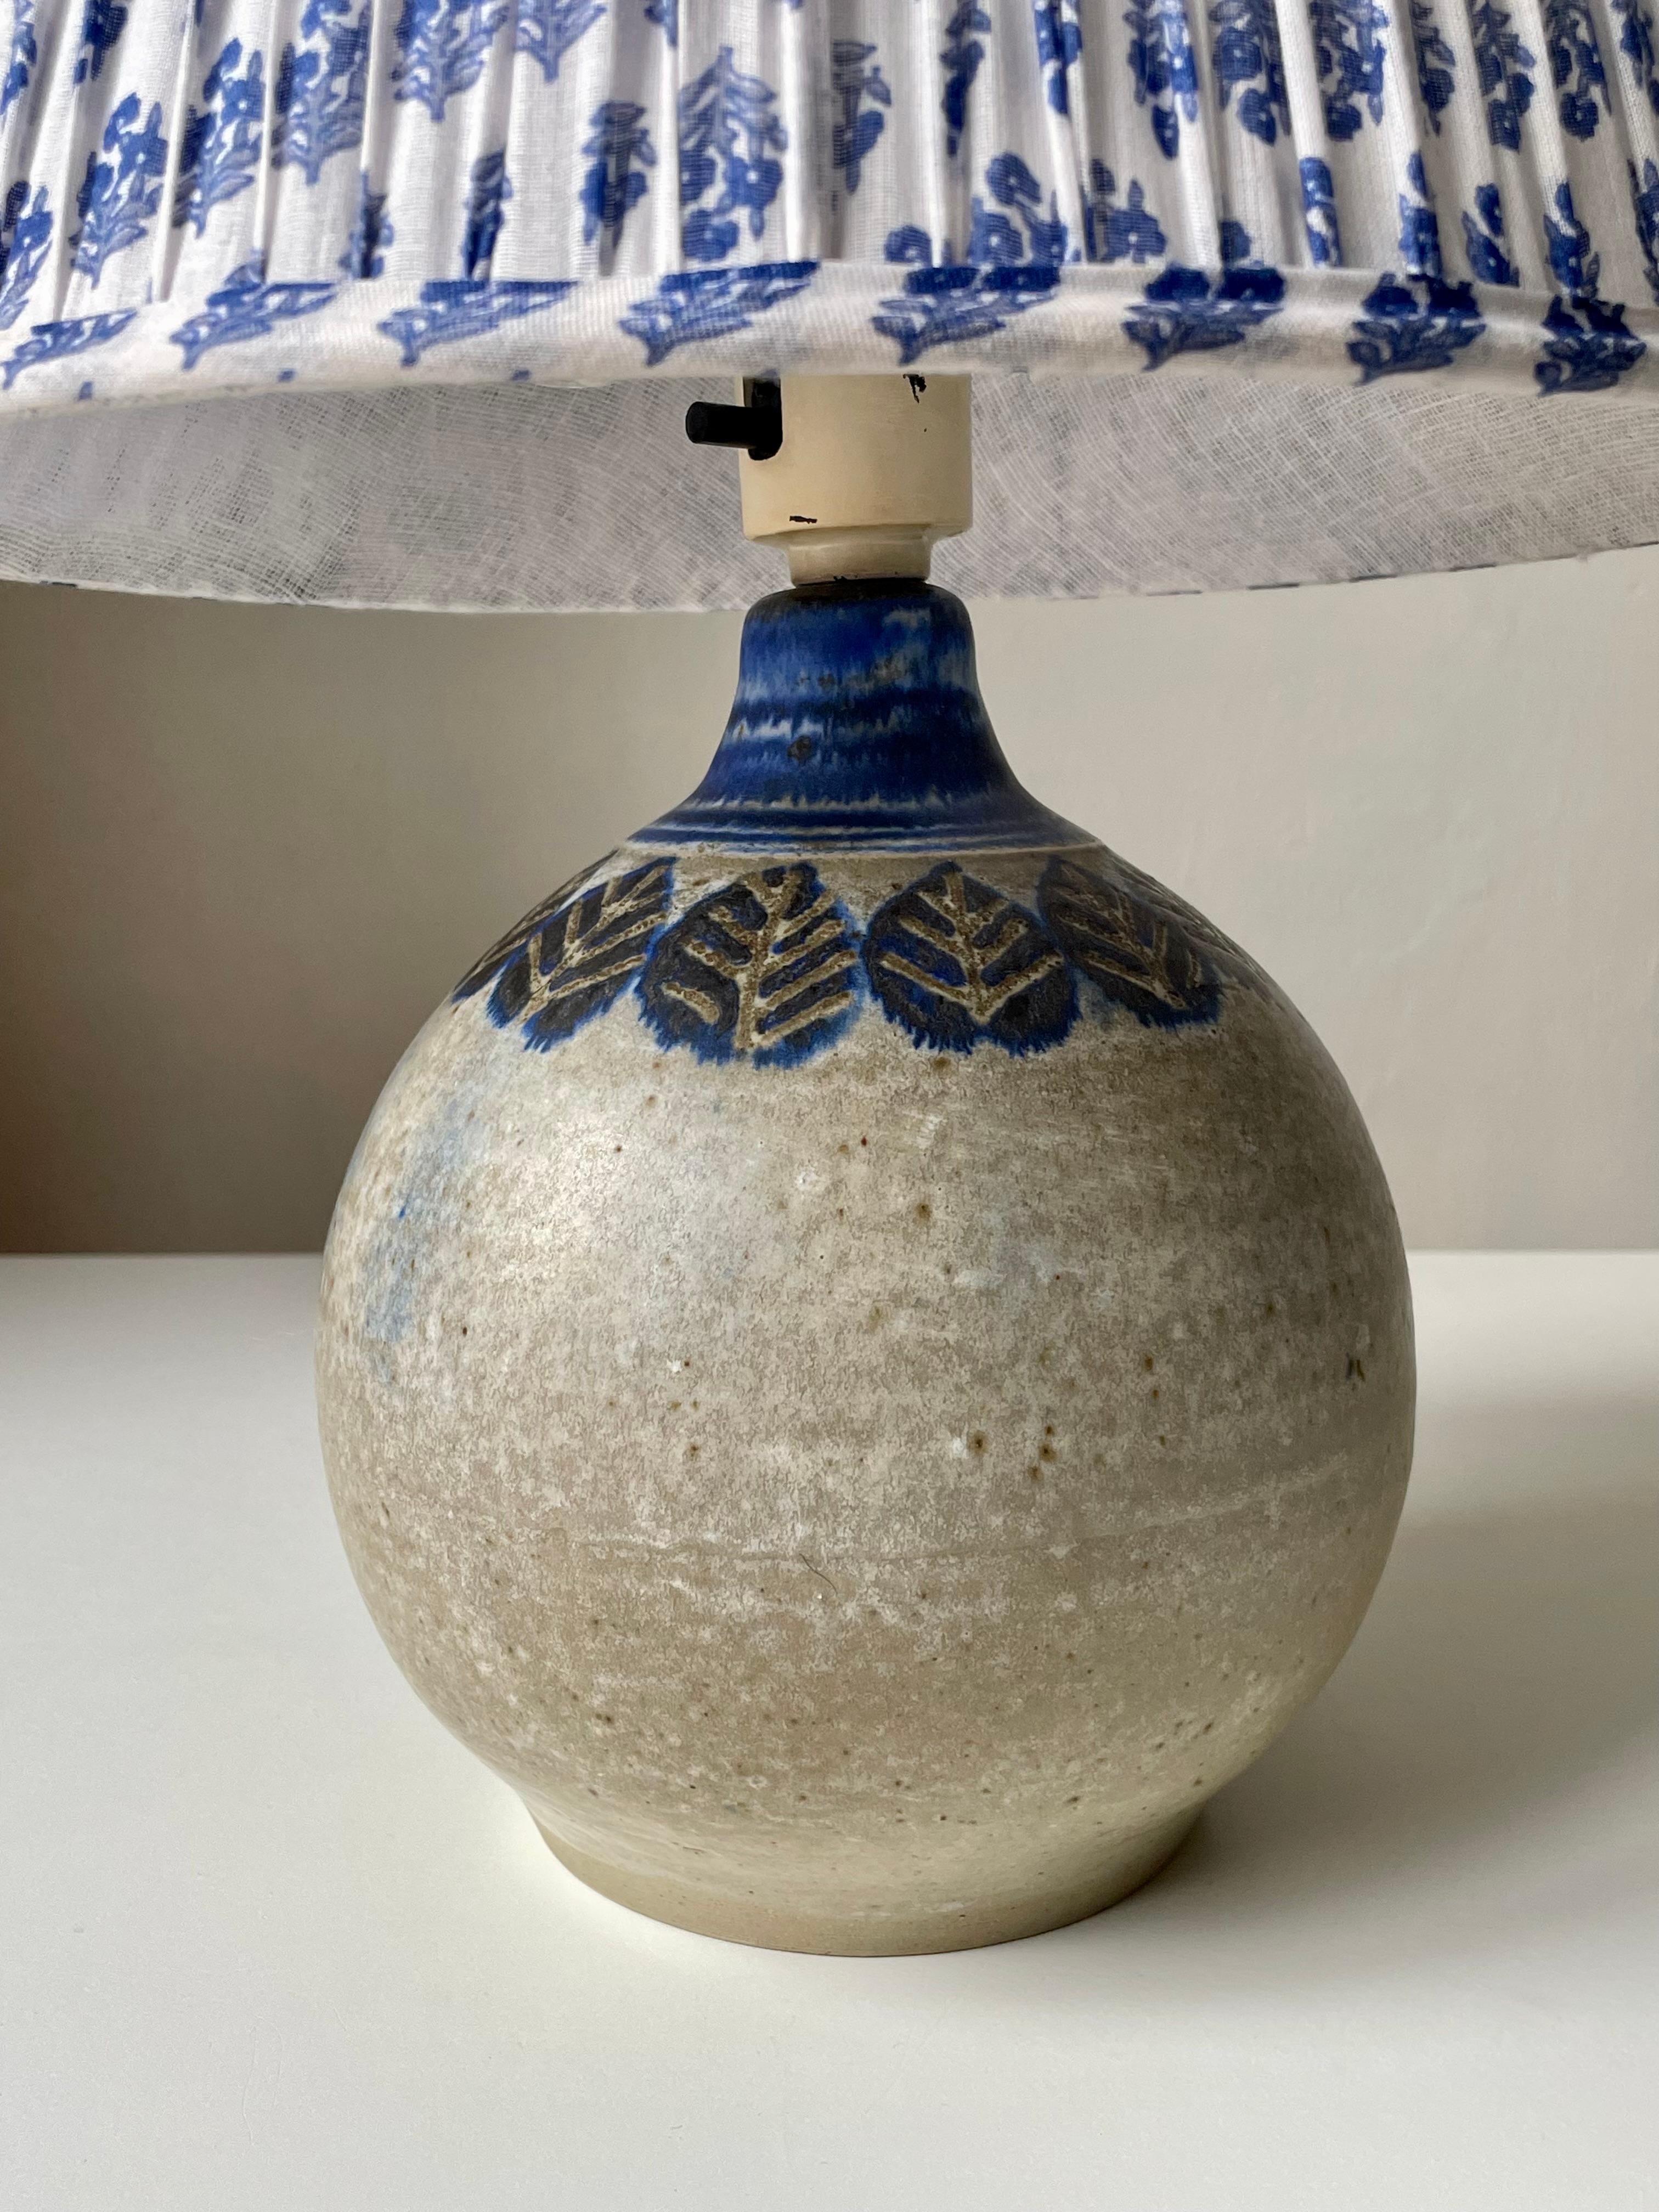 Lampe de table circulaire en céramique moderne danoise émaillée de couleur sable avec des feuilles stylisées bleues peintes à la main sous le col émaillé bleu. Conçu et fabriqué à la main par Nis Stougaard sur l'île danoise de Bornholm dans les